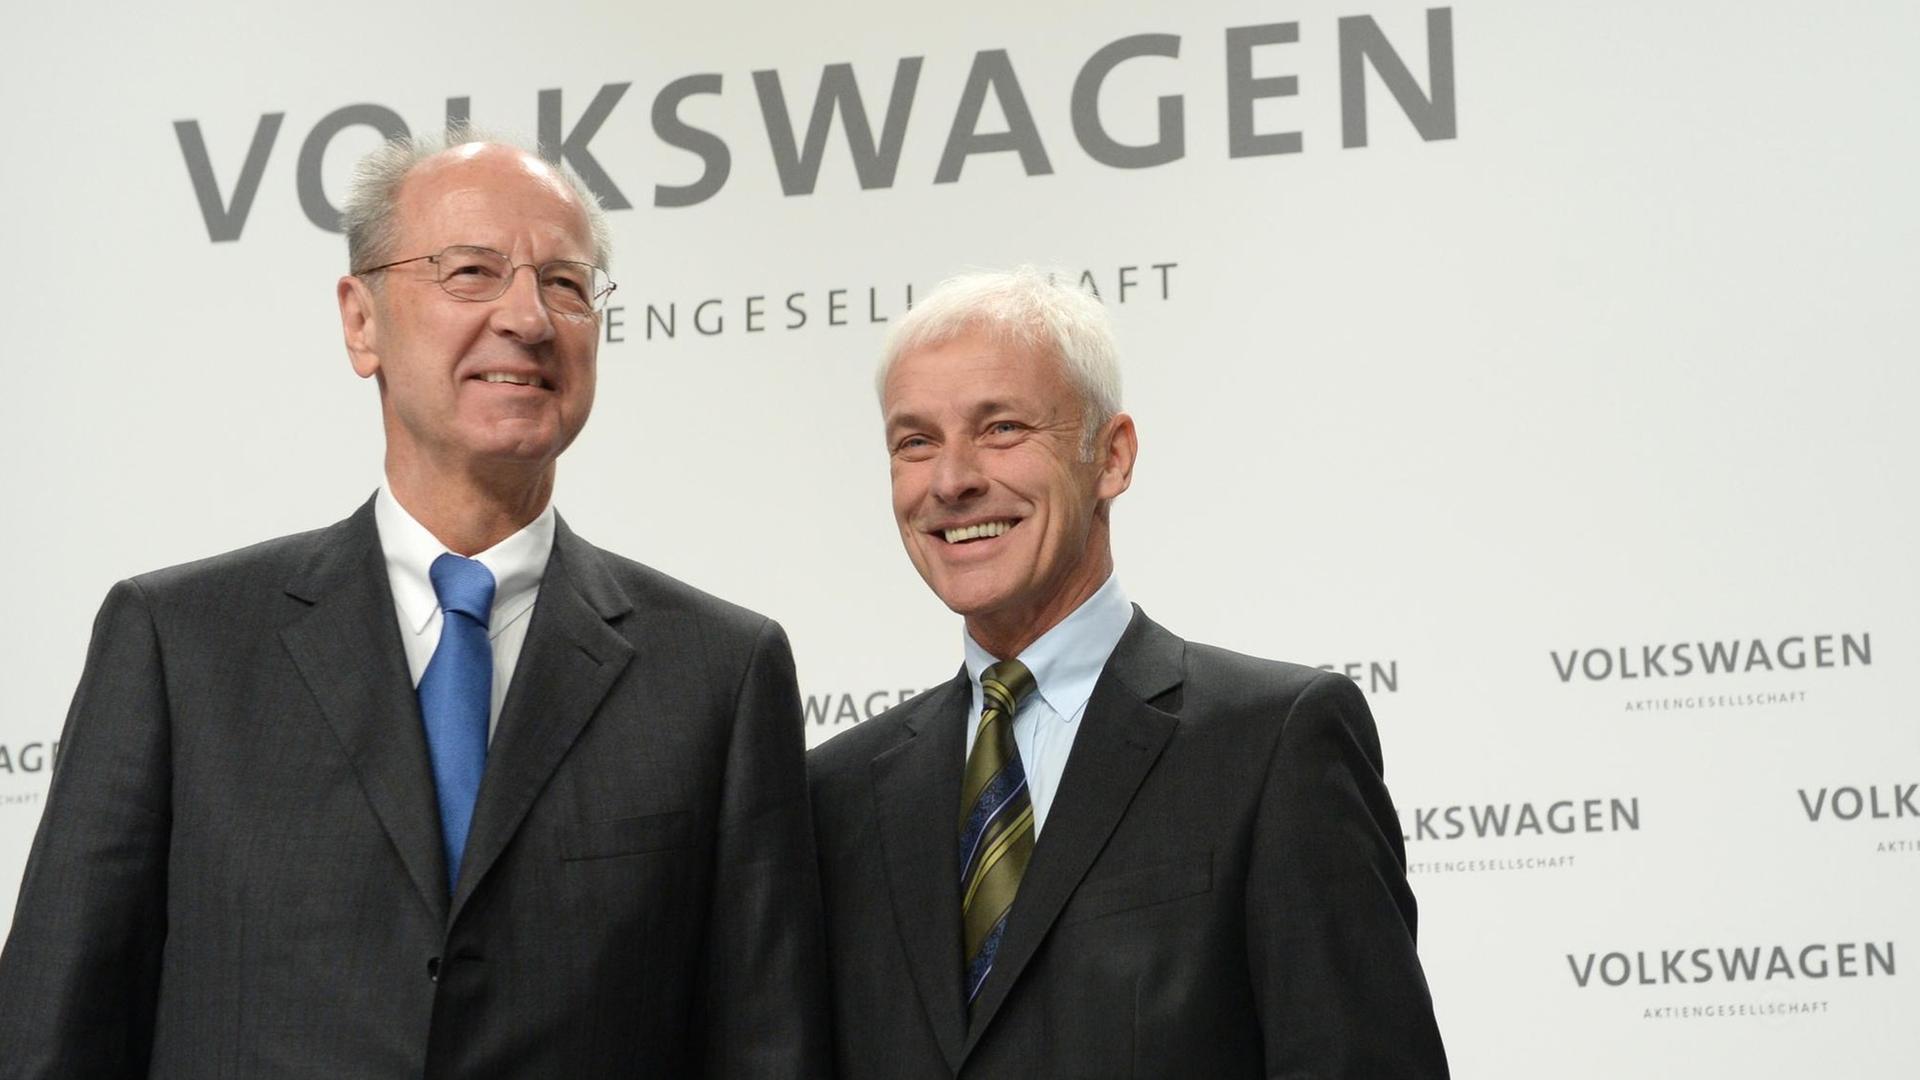 VW-Aufsichtsratschef Pötsch und Vorstandschef Müller bei einer Pressekonferenz in Wolfsburg.